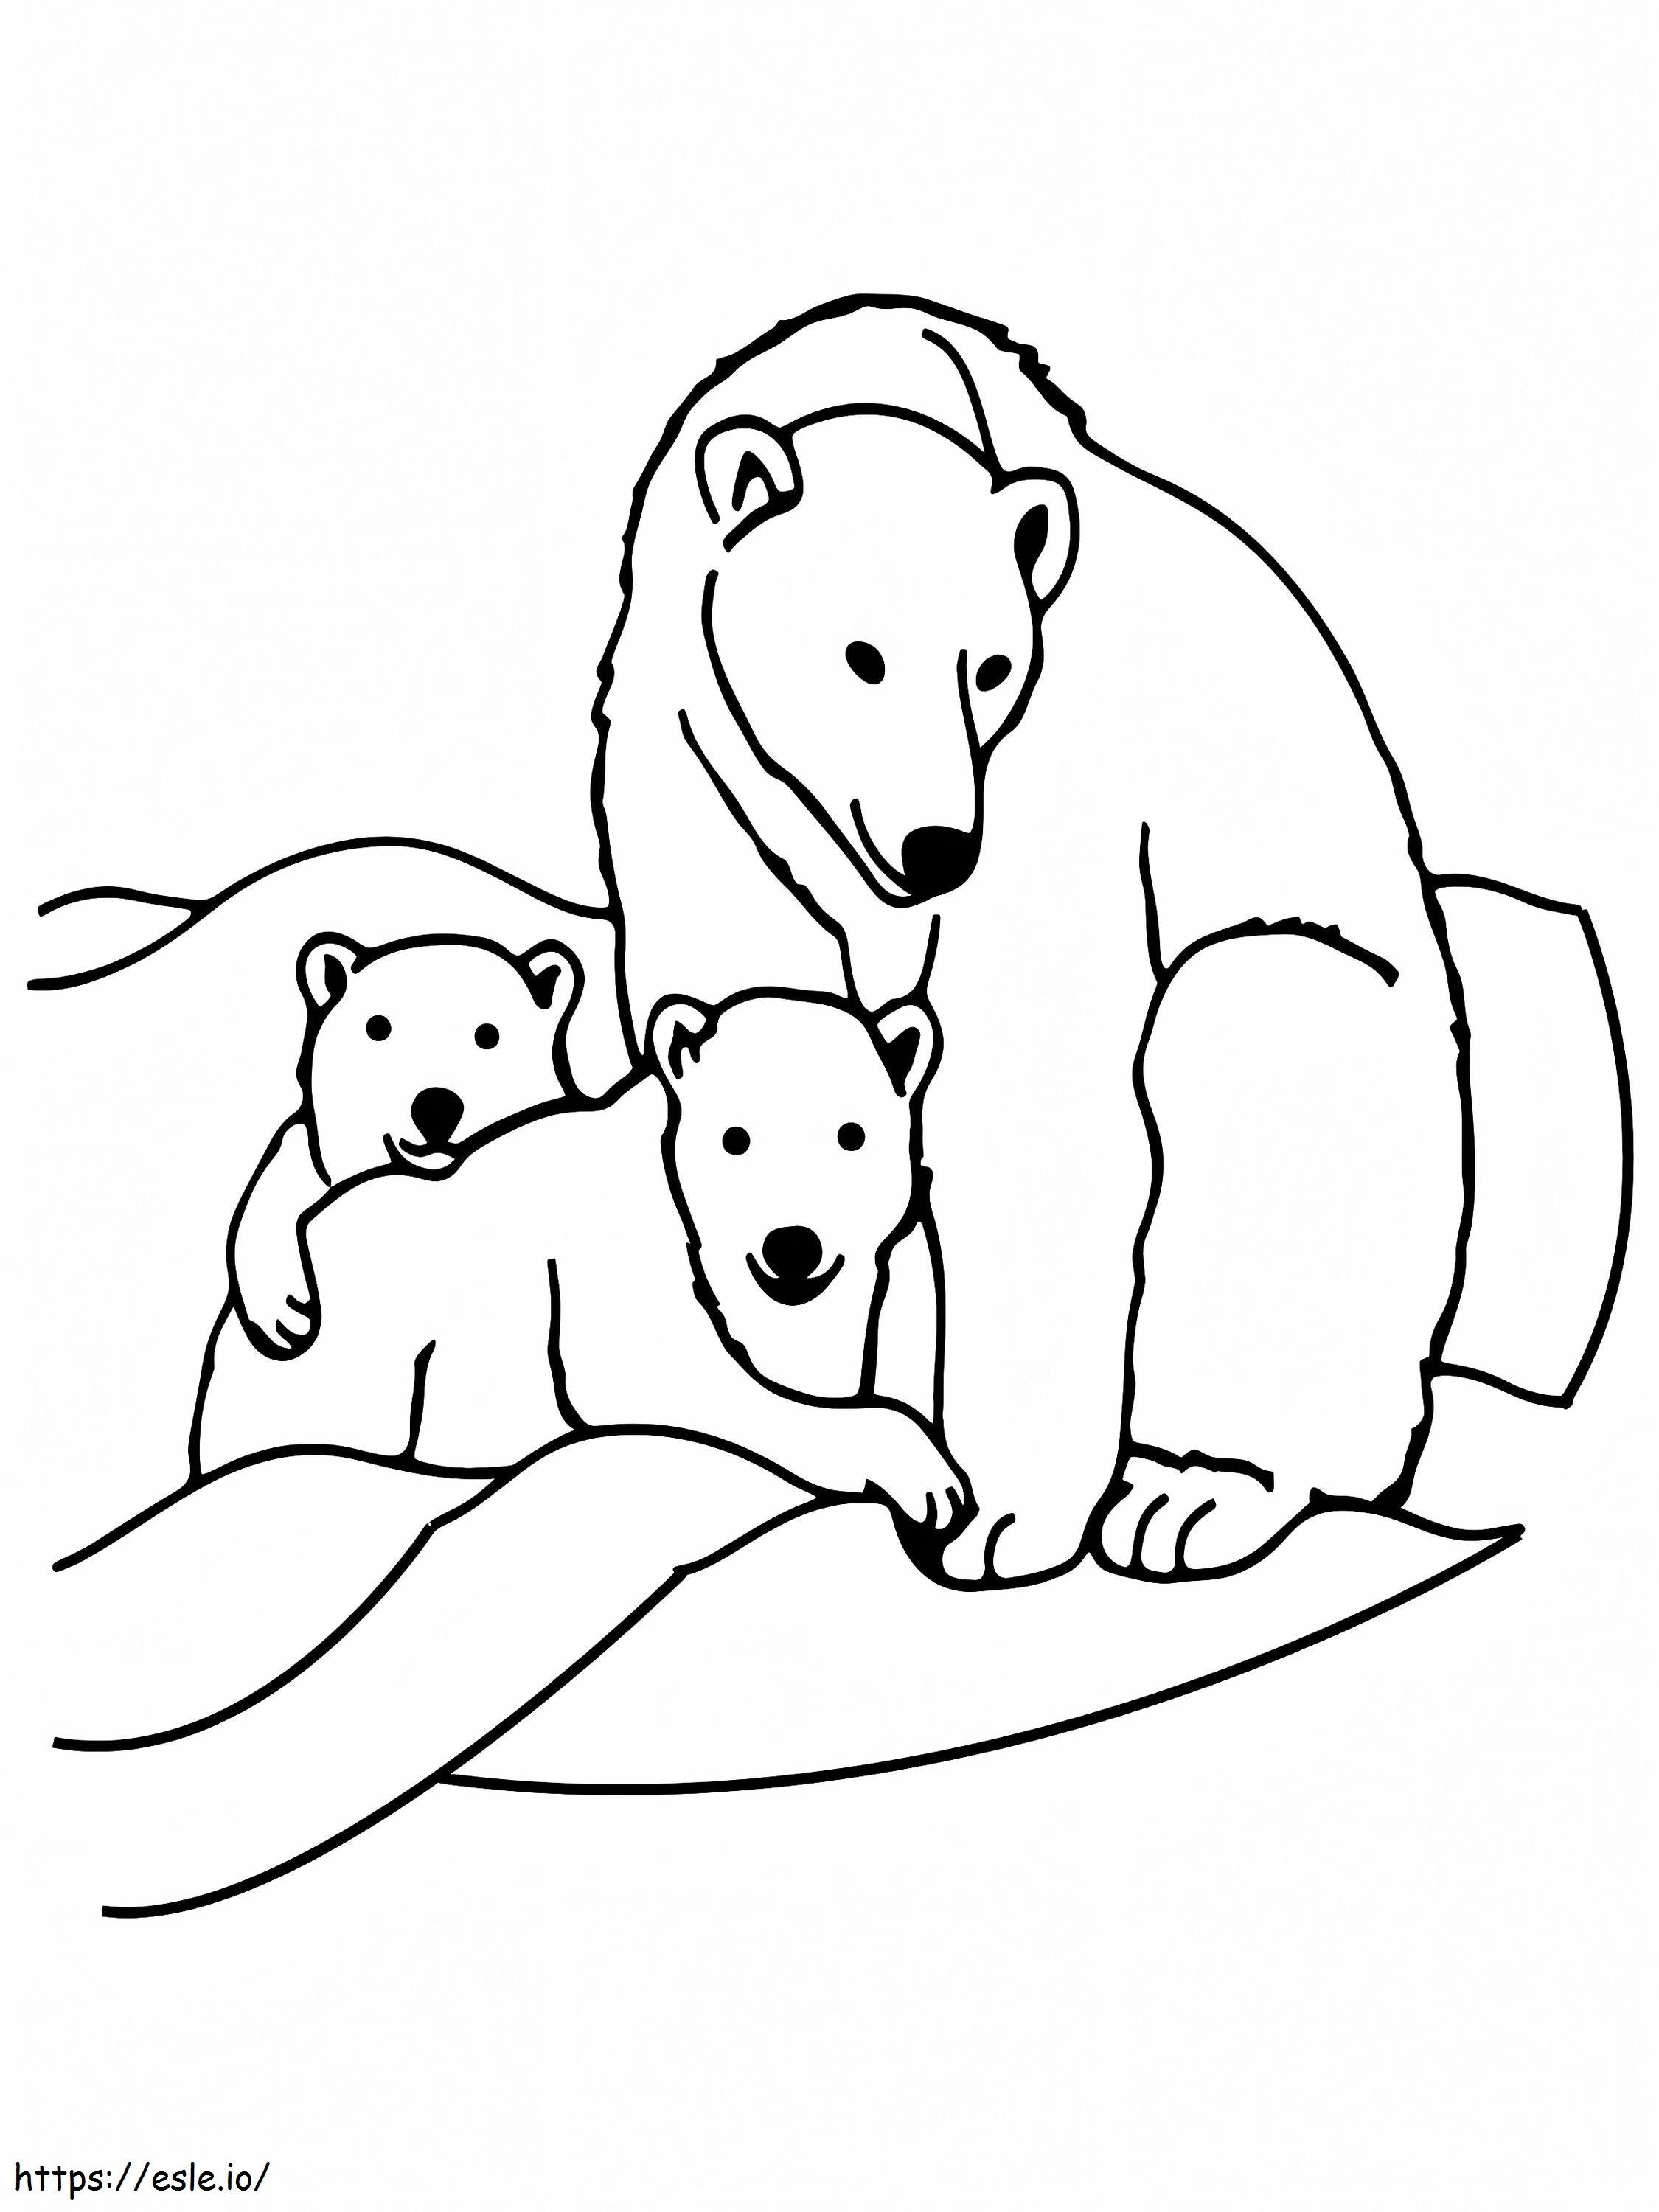 Rodzina niedźwiedzi polarnych zwierząt kolorowanka